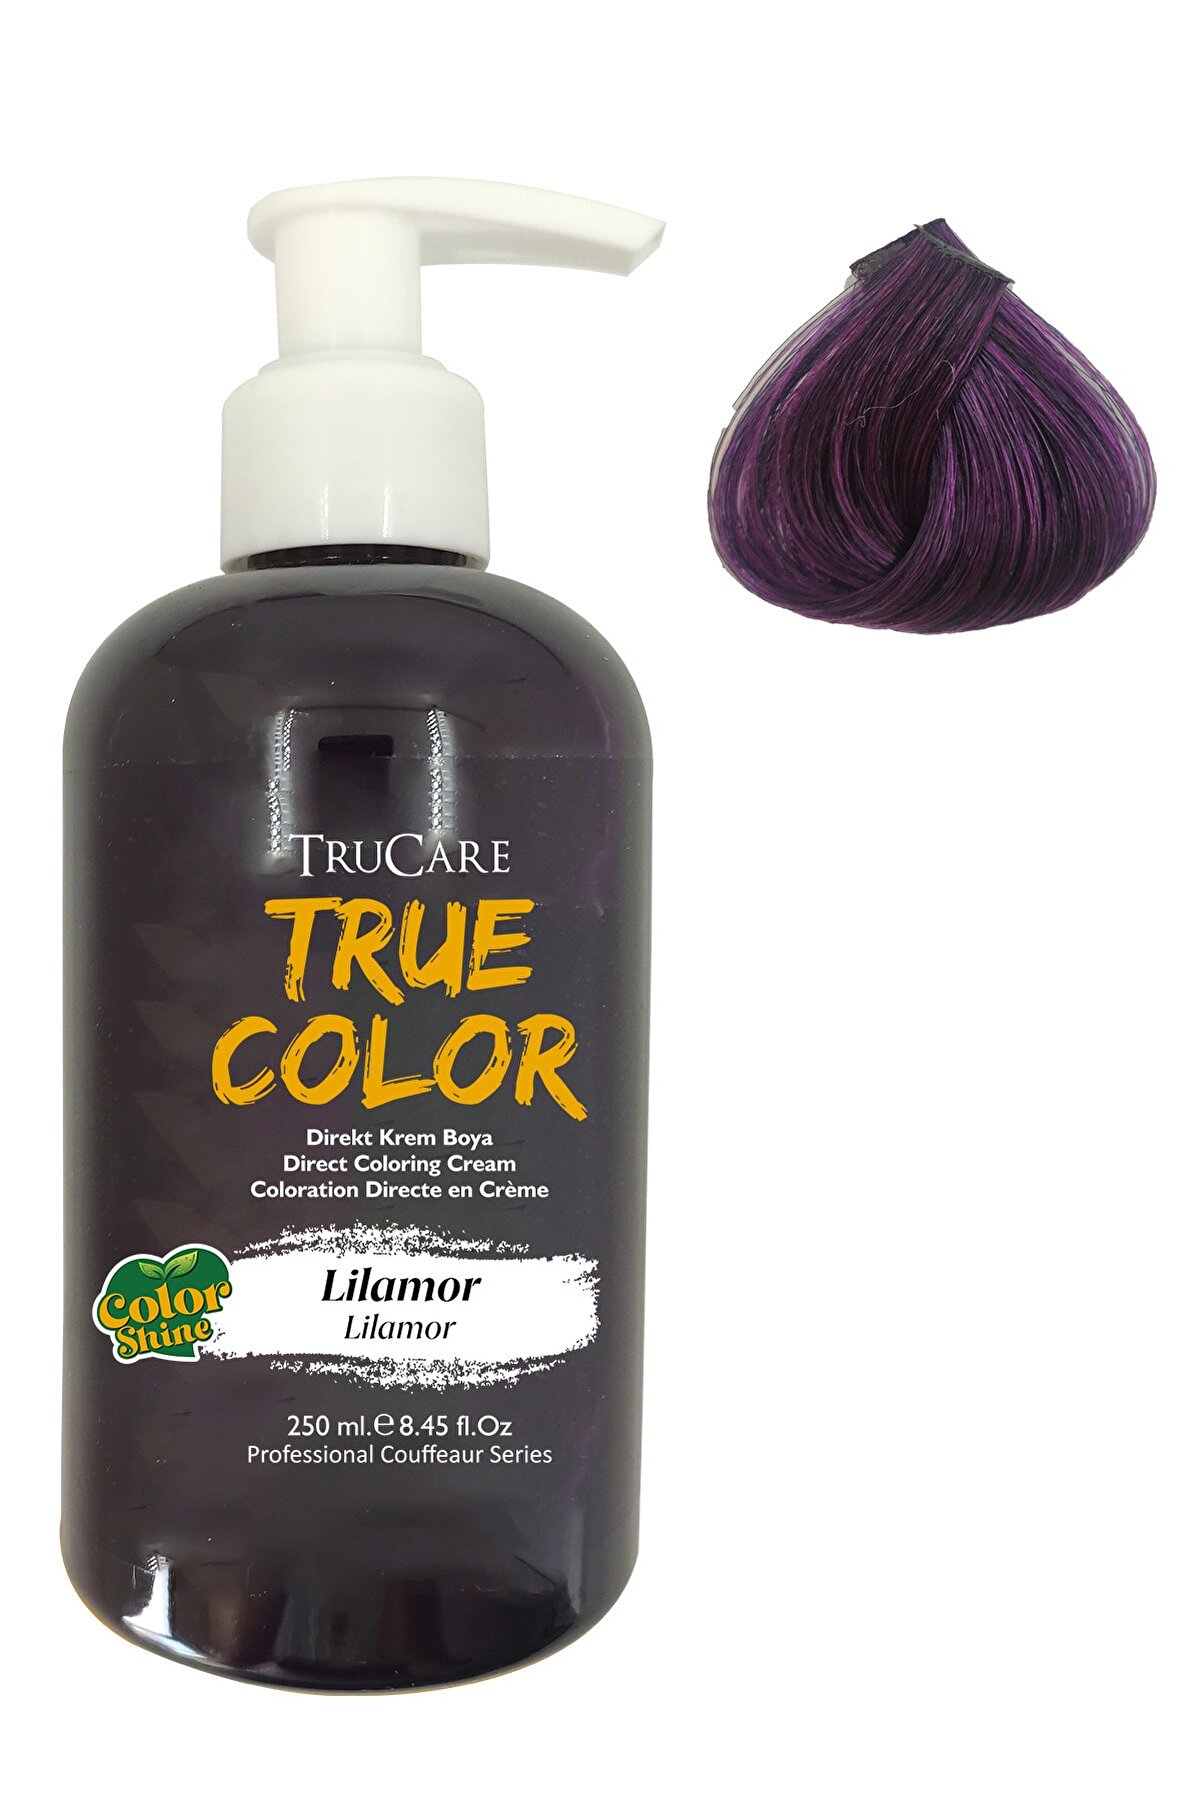 Trucare Truecolor Saç Boyası Lilamor 250 ml